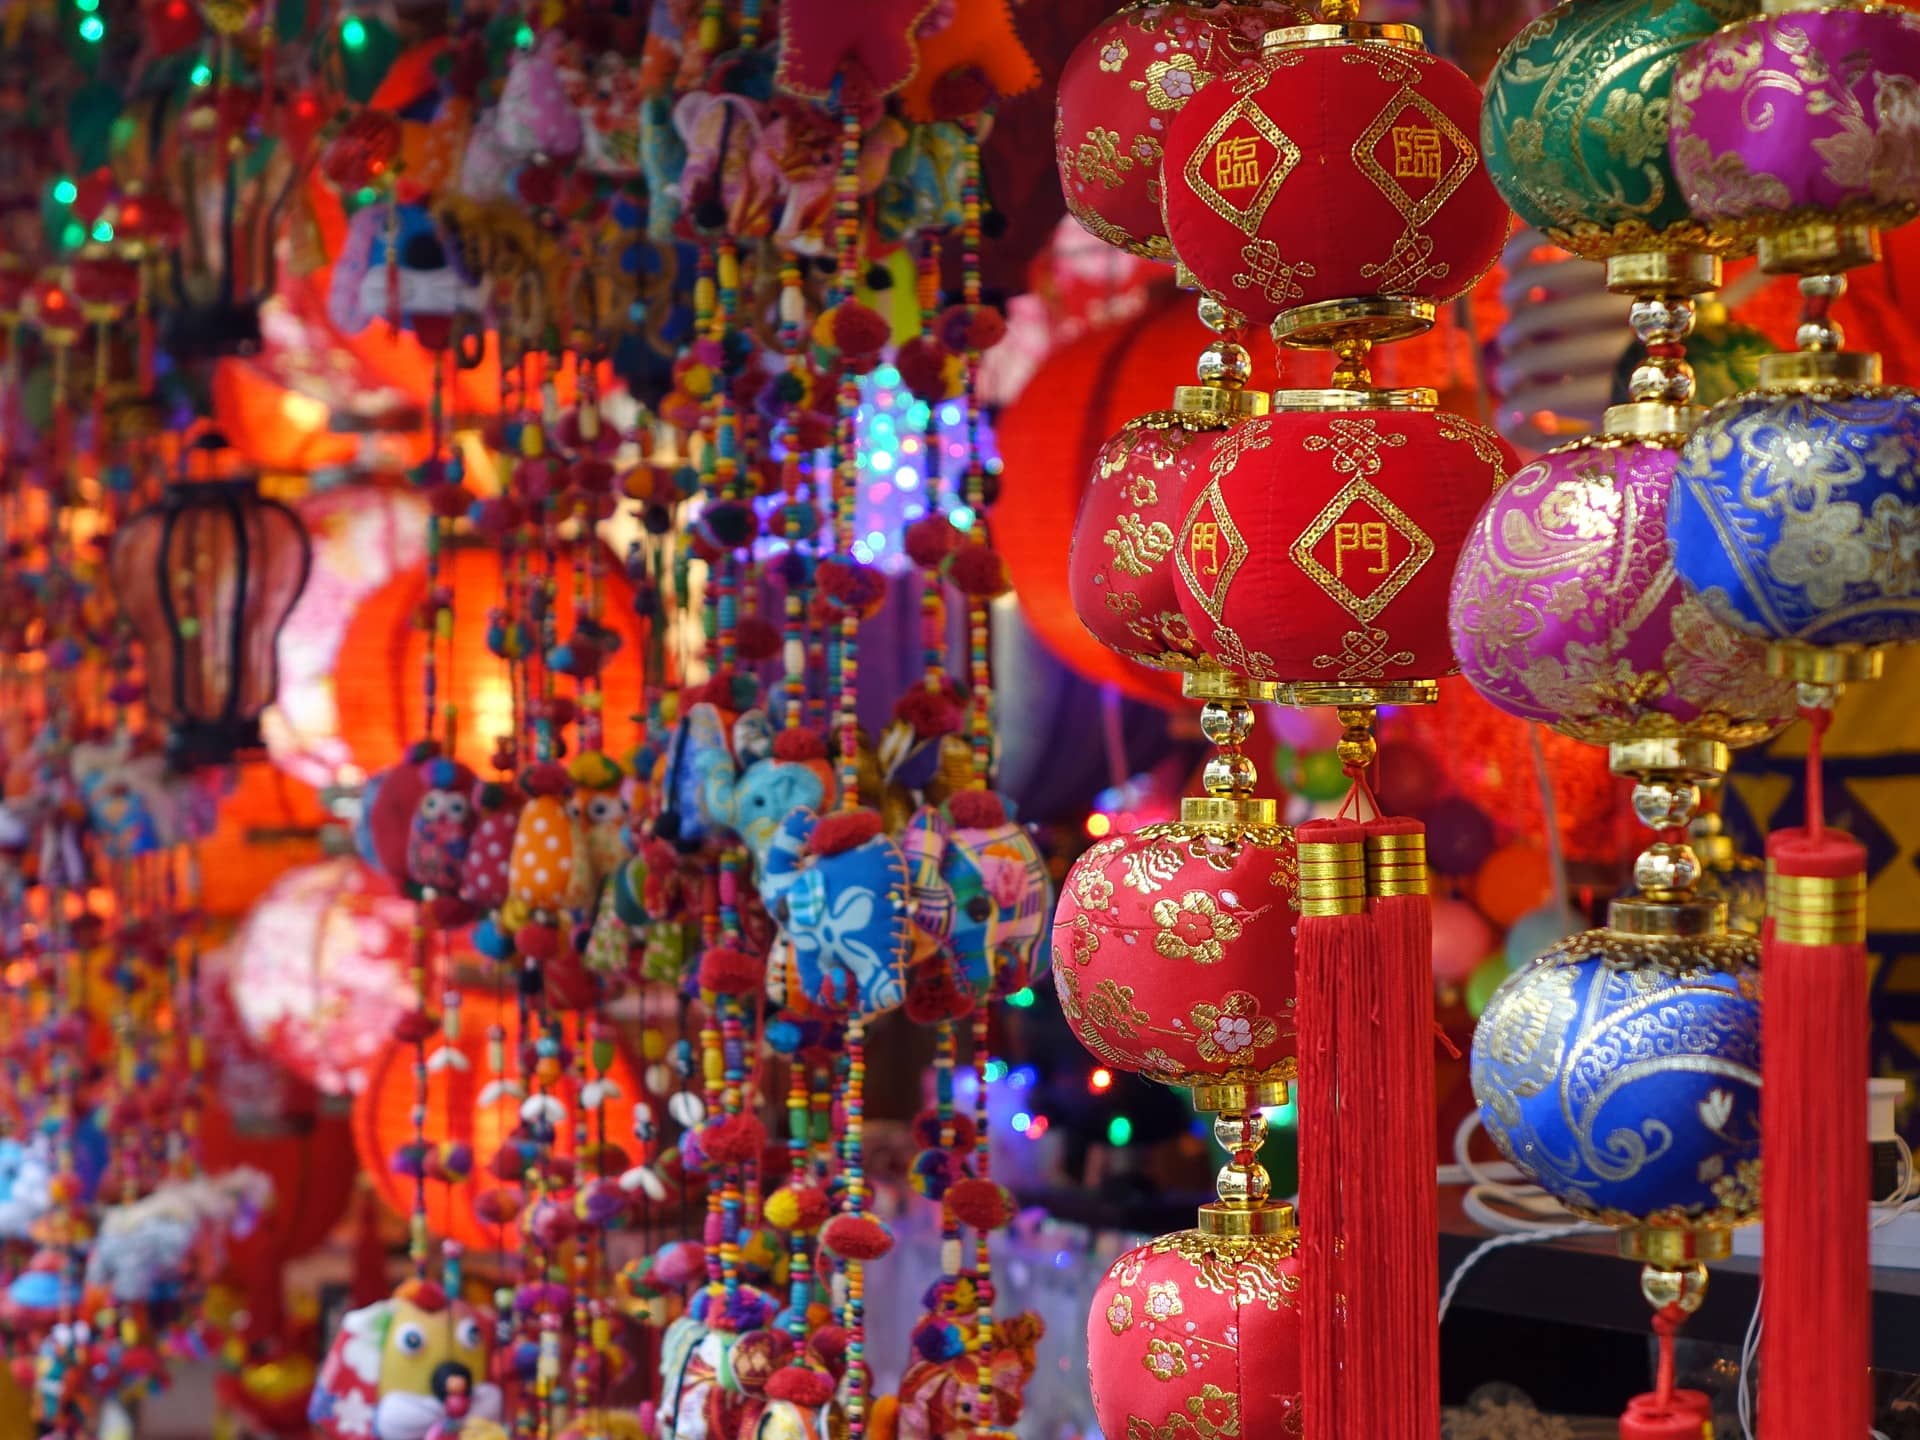 Lanterns during Lunar New Year.